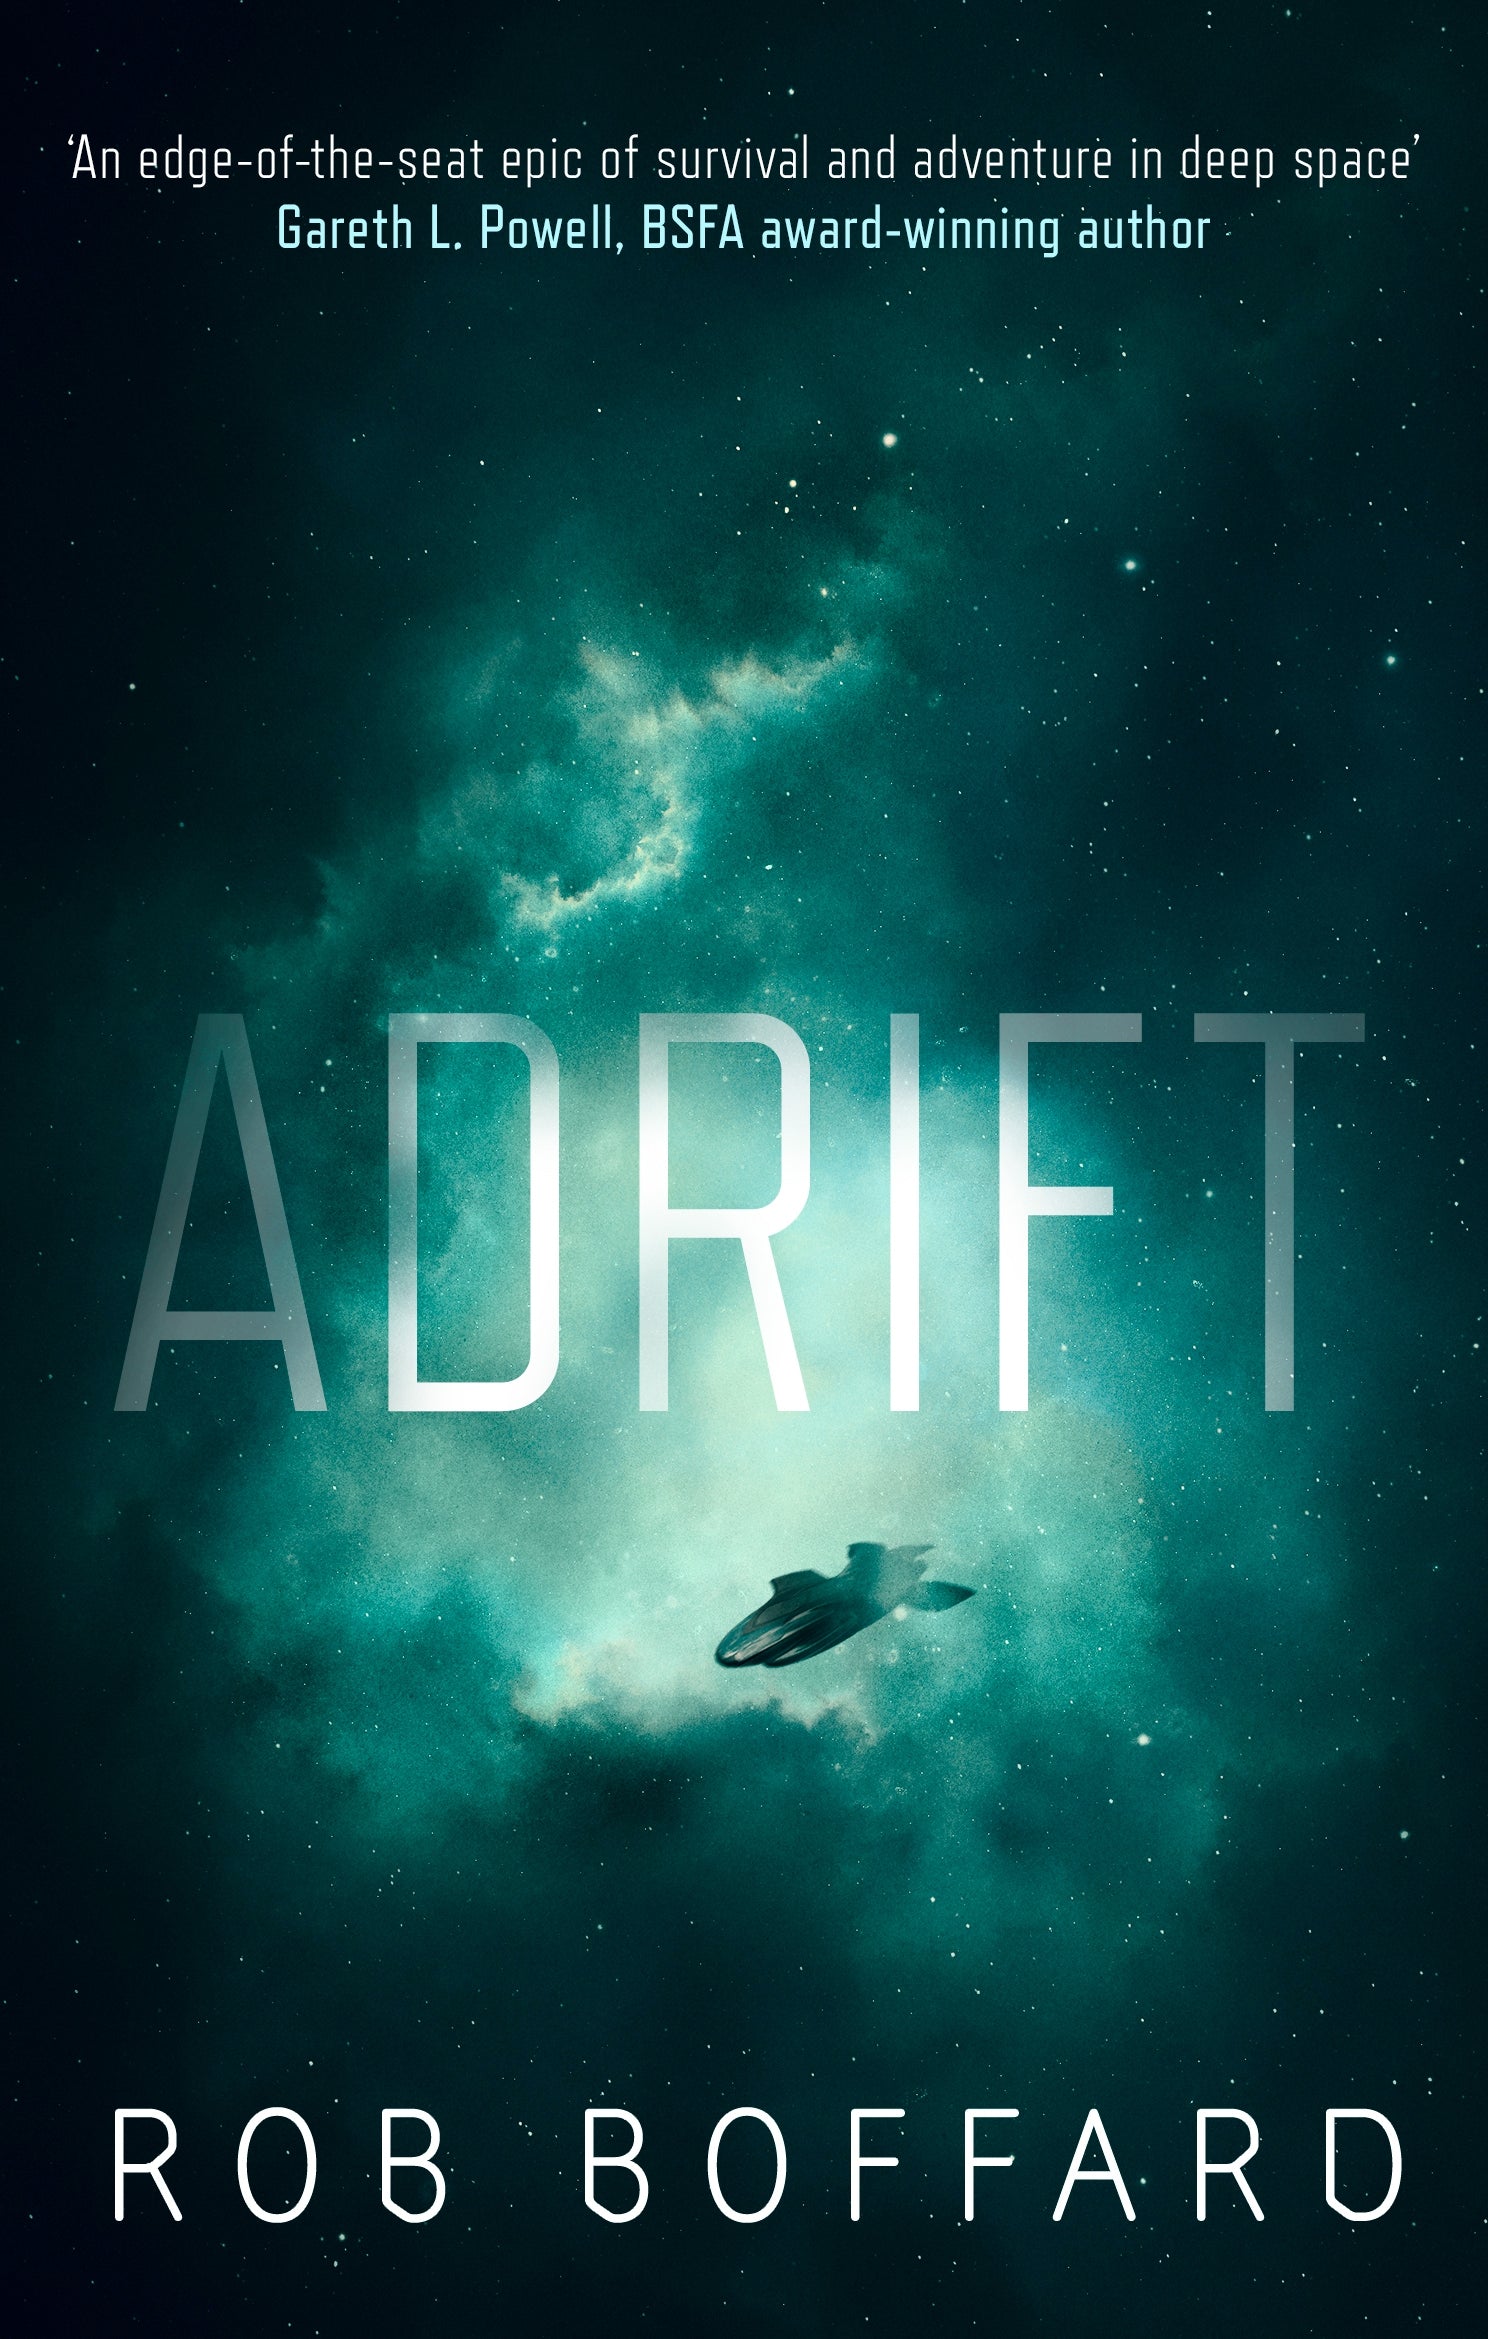 Adrift by Rob Boffard